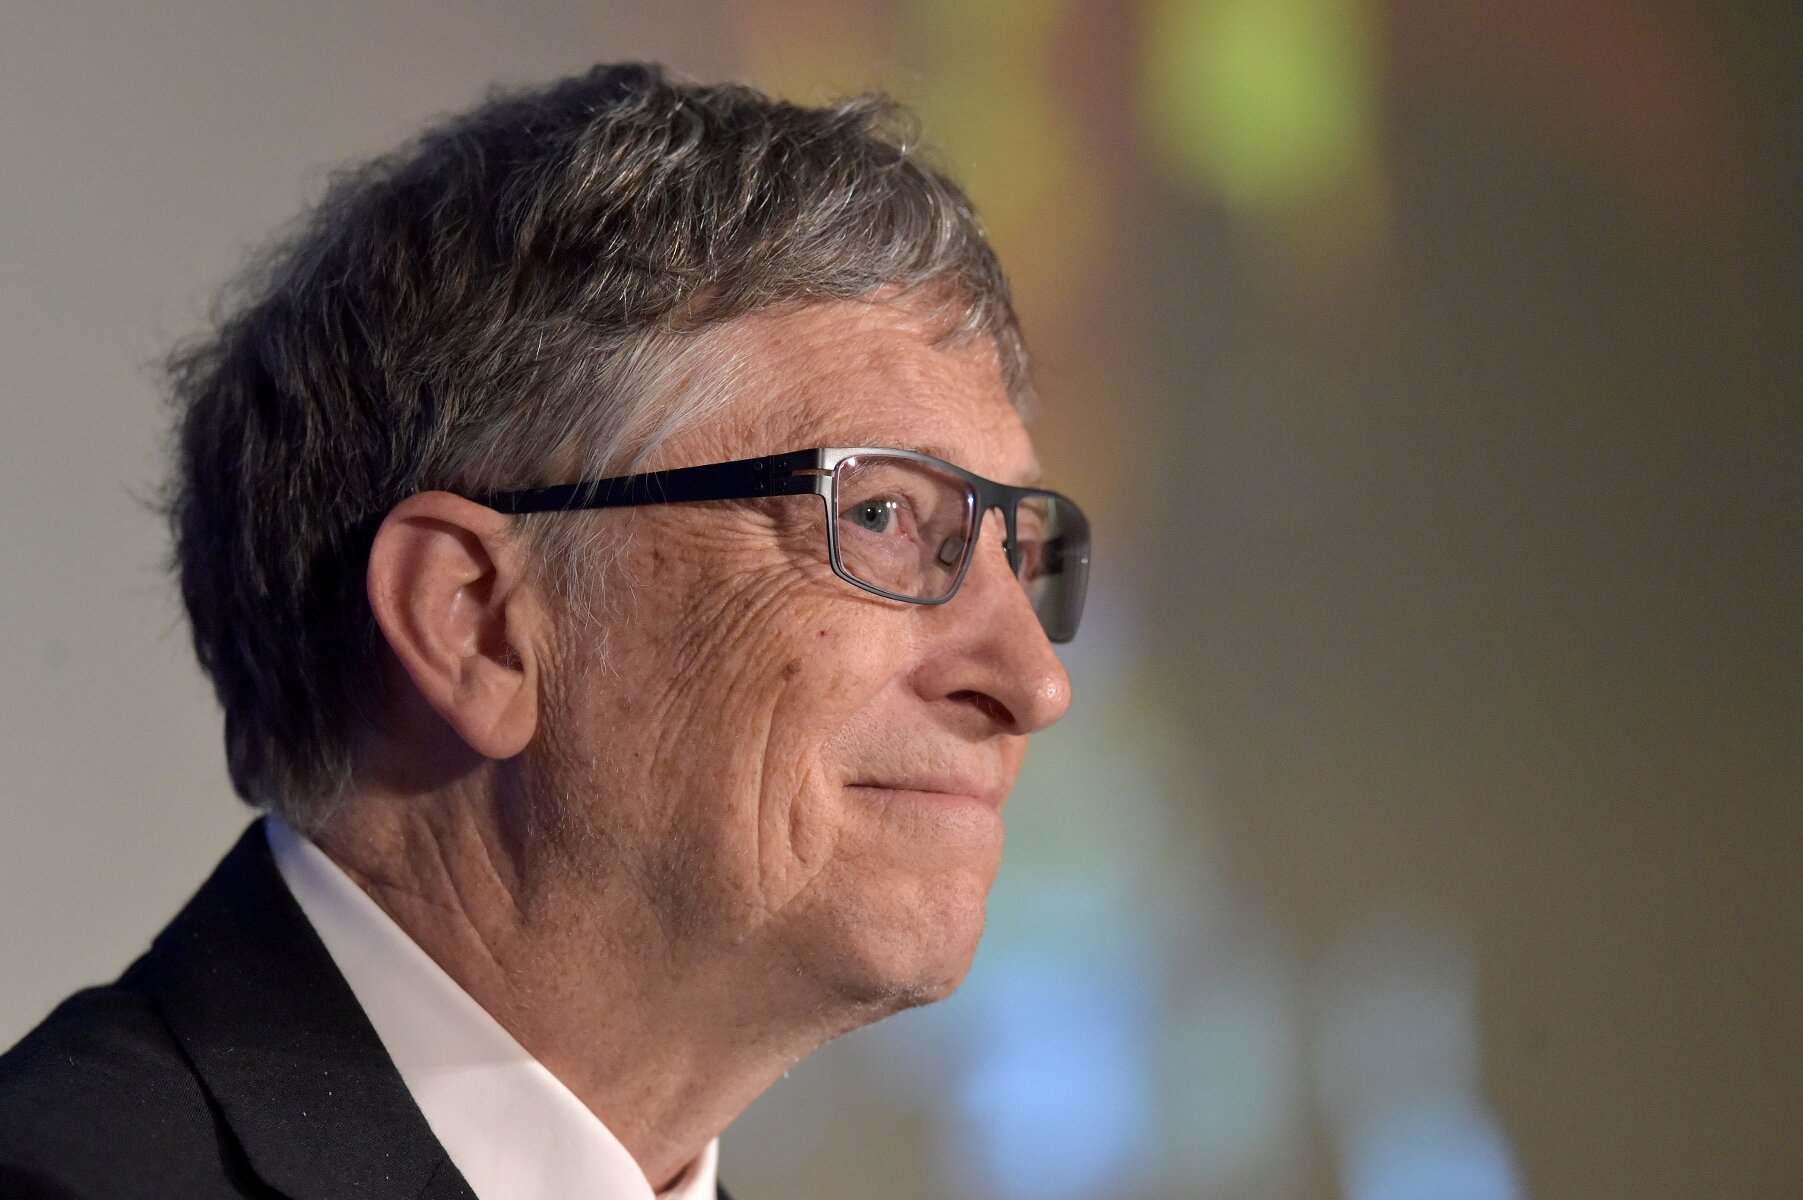 <p><strong>Самый богатый бизнесмен: Билл Гейтс</strong></p>

<p>За последние 23 года основатель Microsoft Билл Гейтс&nbsp;занимал первую строчку мирового рейтинга миллиардеров Forbes&nbsp;18 раз. И этот год не стал исключением. За последний год состояние Гейтса &nbsp;увеличилось на 10&nbsp;миллиардов долларов до 86,8 миллиарда. В 2014 году Гейтс покинул пост гендиректора Microsoft, оставшись в компании в качестве советника и члена совета директоров. Он также продал большую часть акций компании, оставив себе 2,5%, на которые приходится 13% его состояния. Гейтс инвестировал в Canadian National Railway &mdash; оператора&nbsp;крупнейшей&nbsp;в Северной Америке сети железных дорог, в компании&nbsp;Deere &amp; Co и AutoNation. Вместе с женой Гейтс возглавляет крупнейший в мире благотворительный фонд Билла и Мелинды Гейтс, который инвестирует в развитие медицины в развитых странах.&nbsp;В 2016 году&nbsp;Гейтс объявил о создании инвестиционного фонда объемом миллиард долларов Breakthrough Energy. Вместе с другими миллиардерами, среди которых в&nbsp;том числе генеральный директор Amazon Джефф Безос и основатель Alibaba Джек Ма, фонд будет инвестировать в альтернативную энергетику.</p>

<p>Второе место в глобальном рейтинге занял инвестор Уоррен Баффет, его состояние Forbes оценил в 75,6 миллиарда долларов.</p>